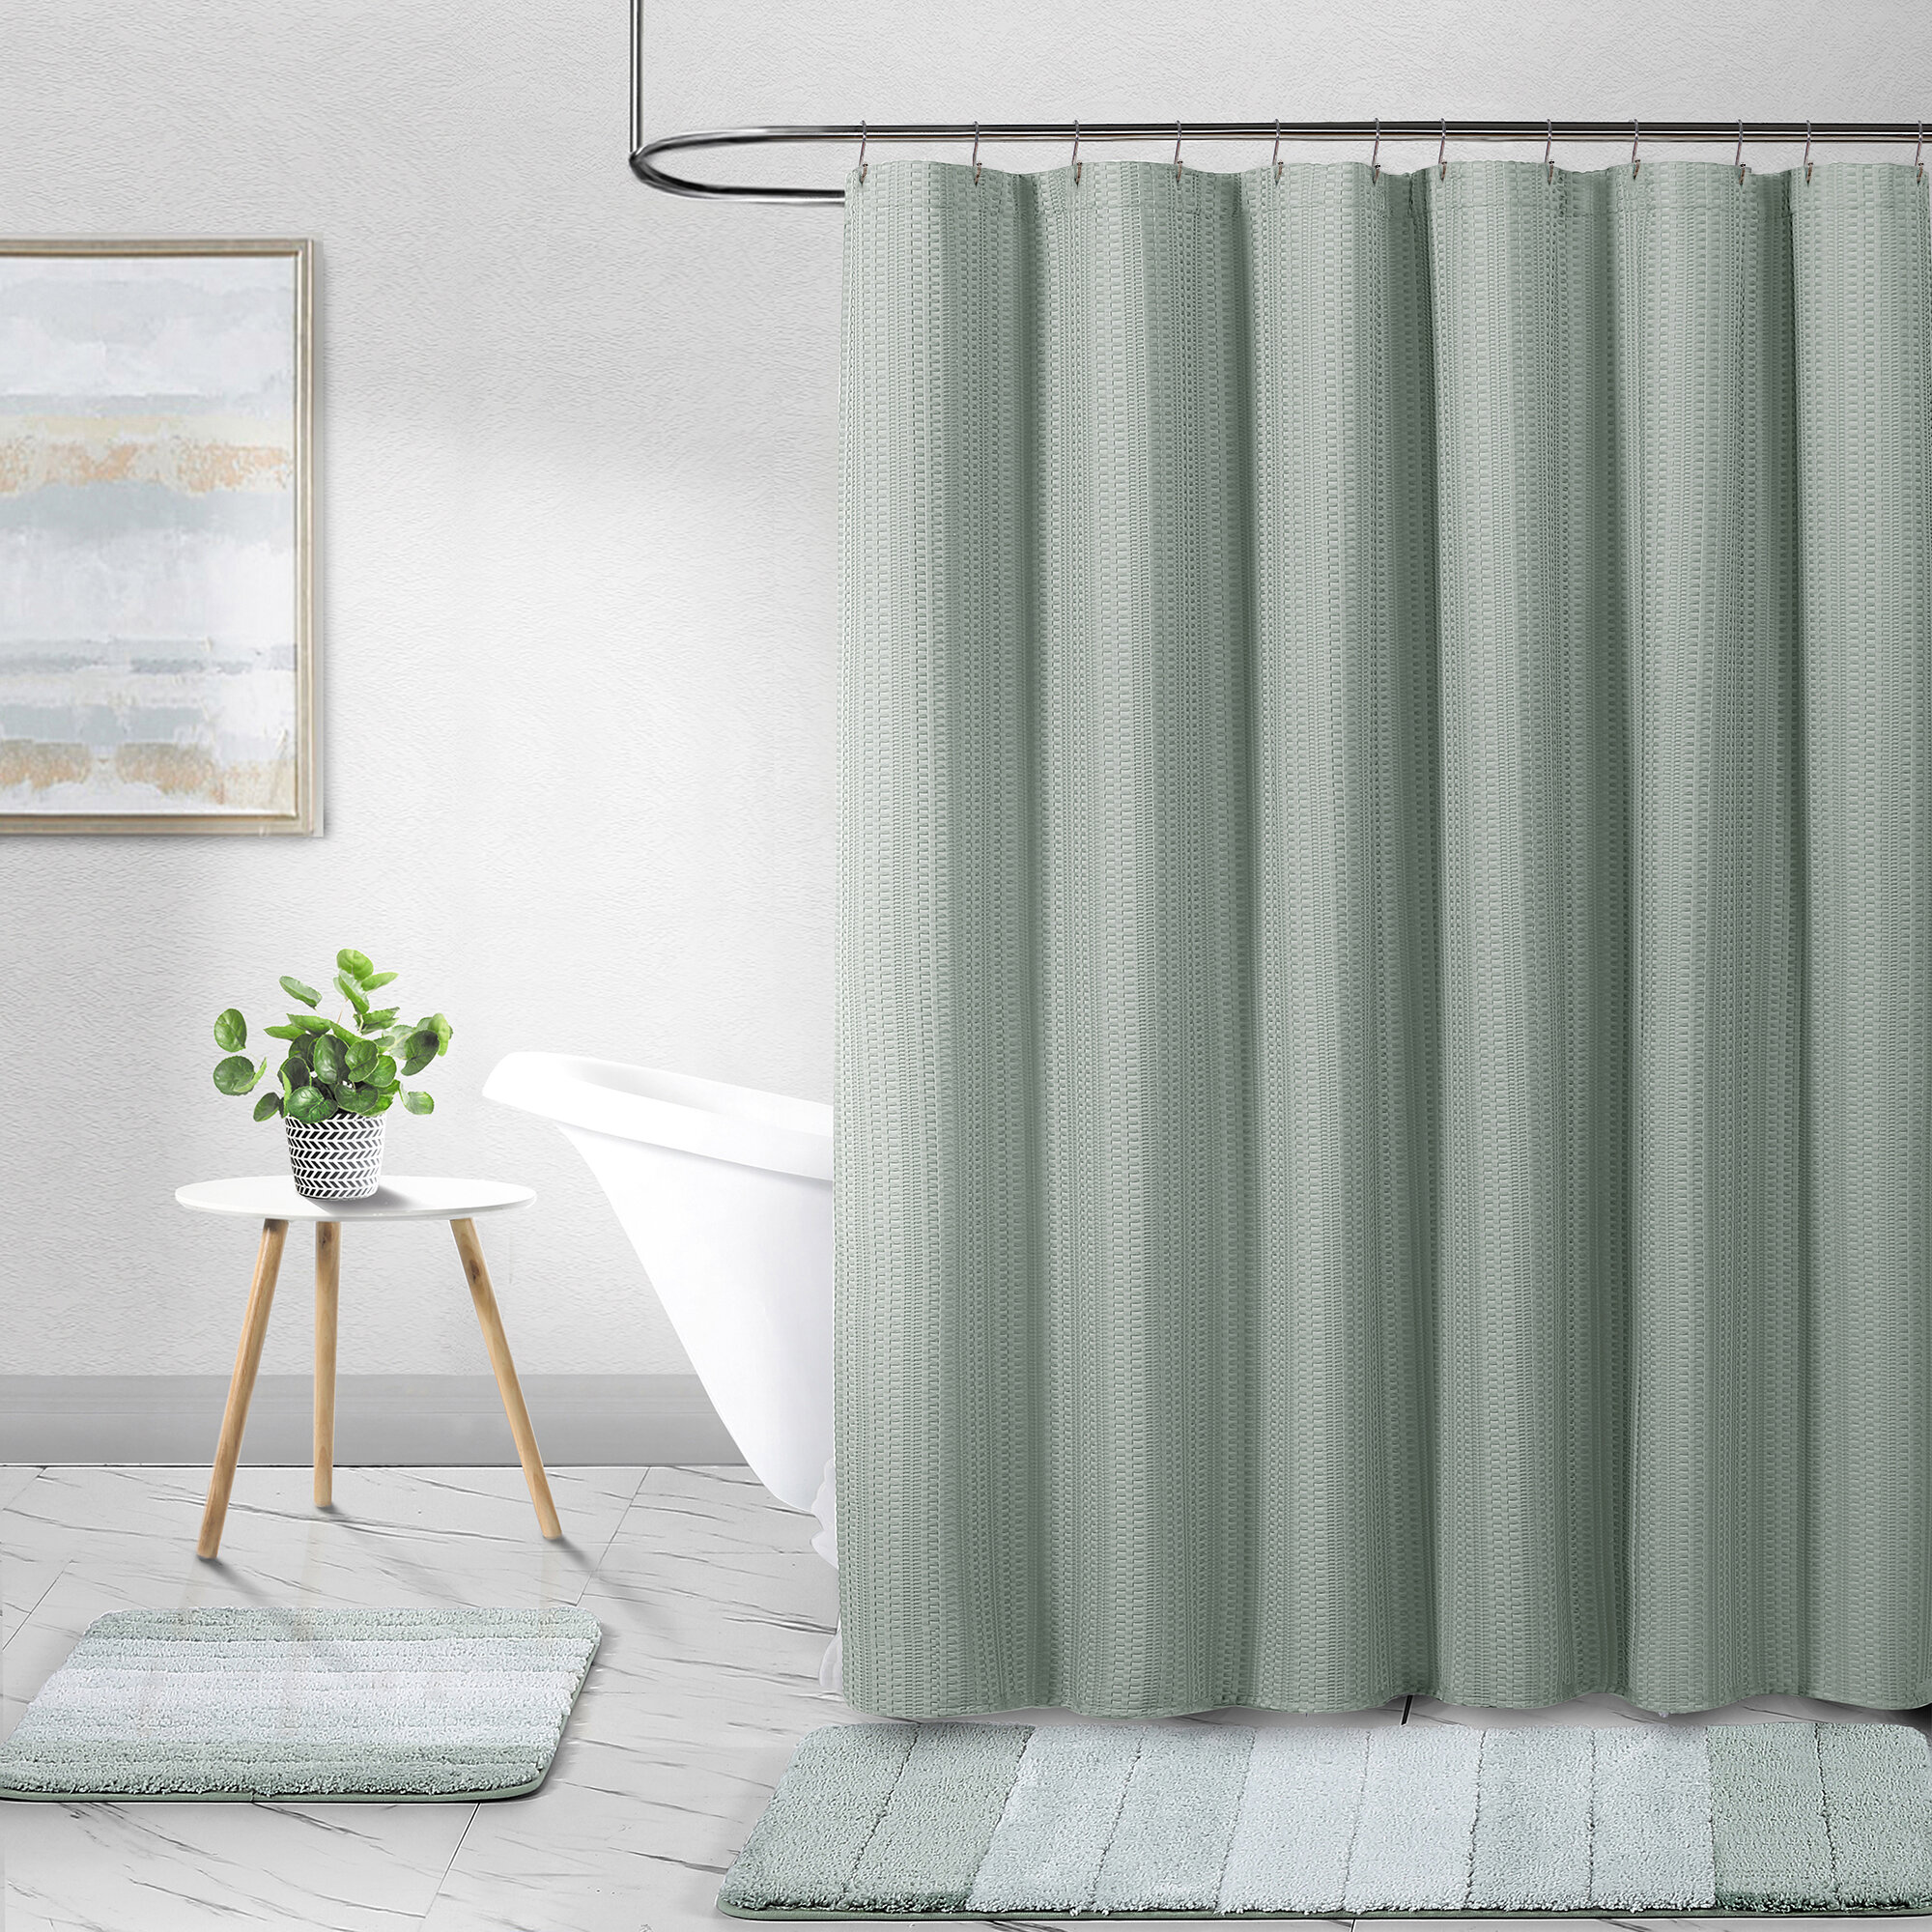 OliverGal 'Hey Jude'Shower Curtain